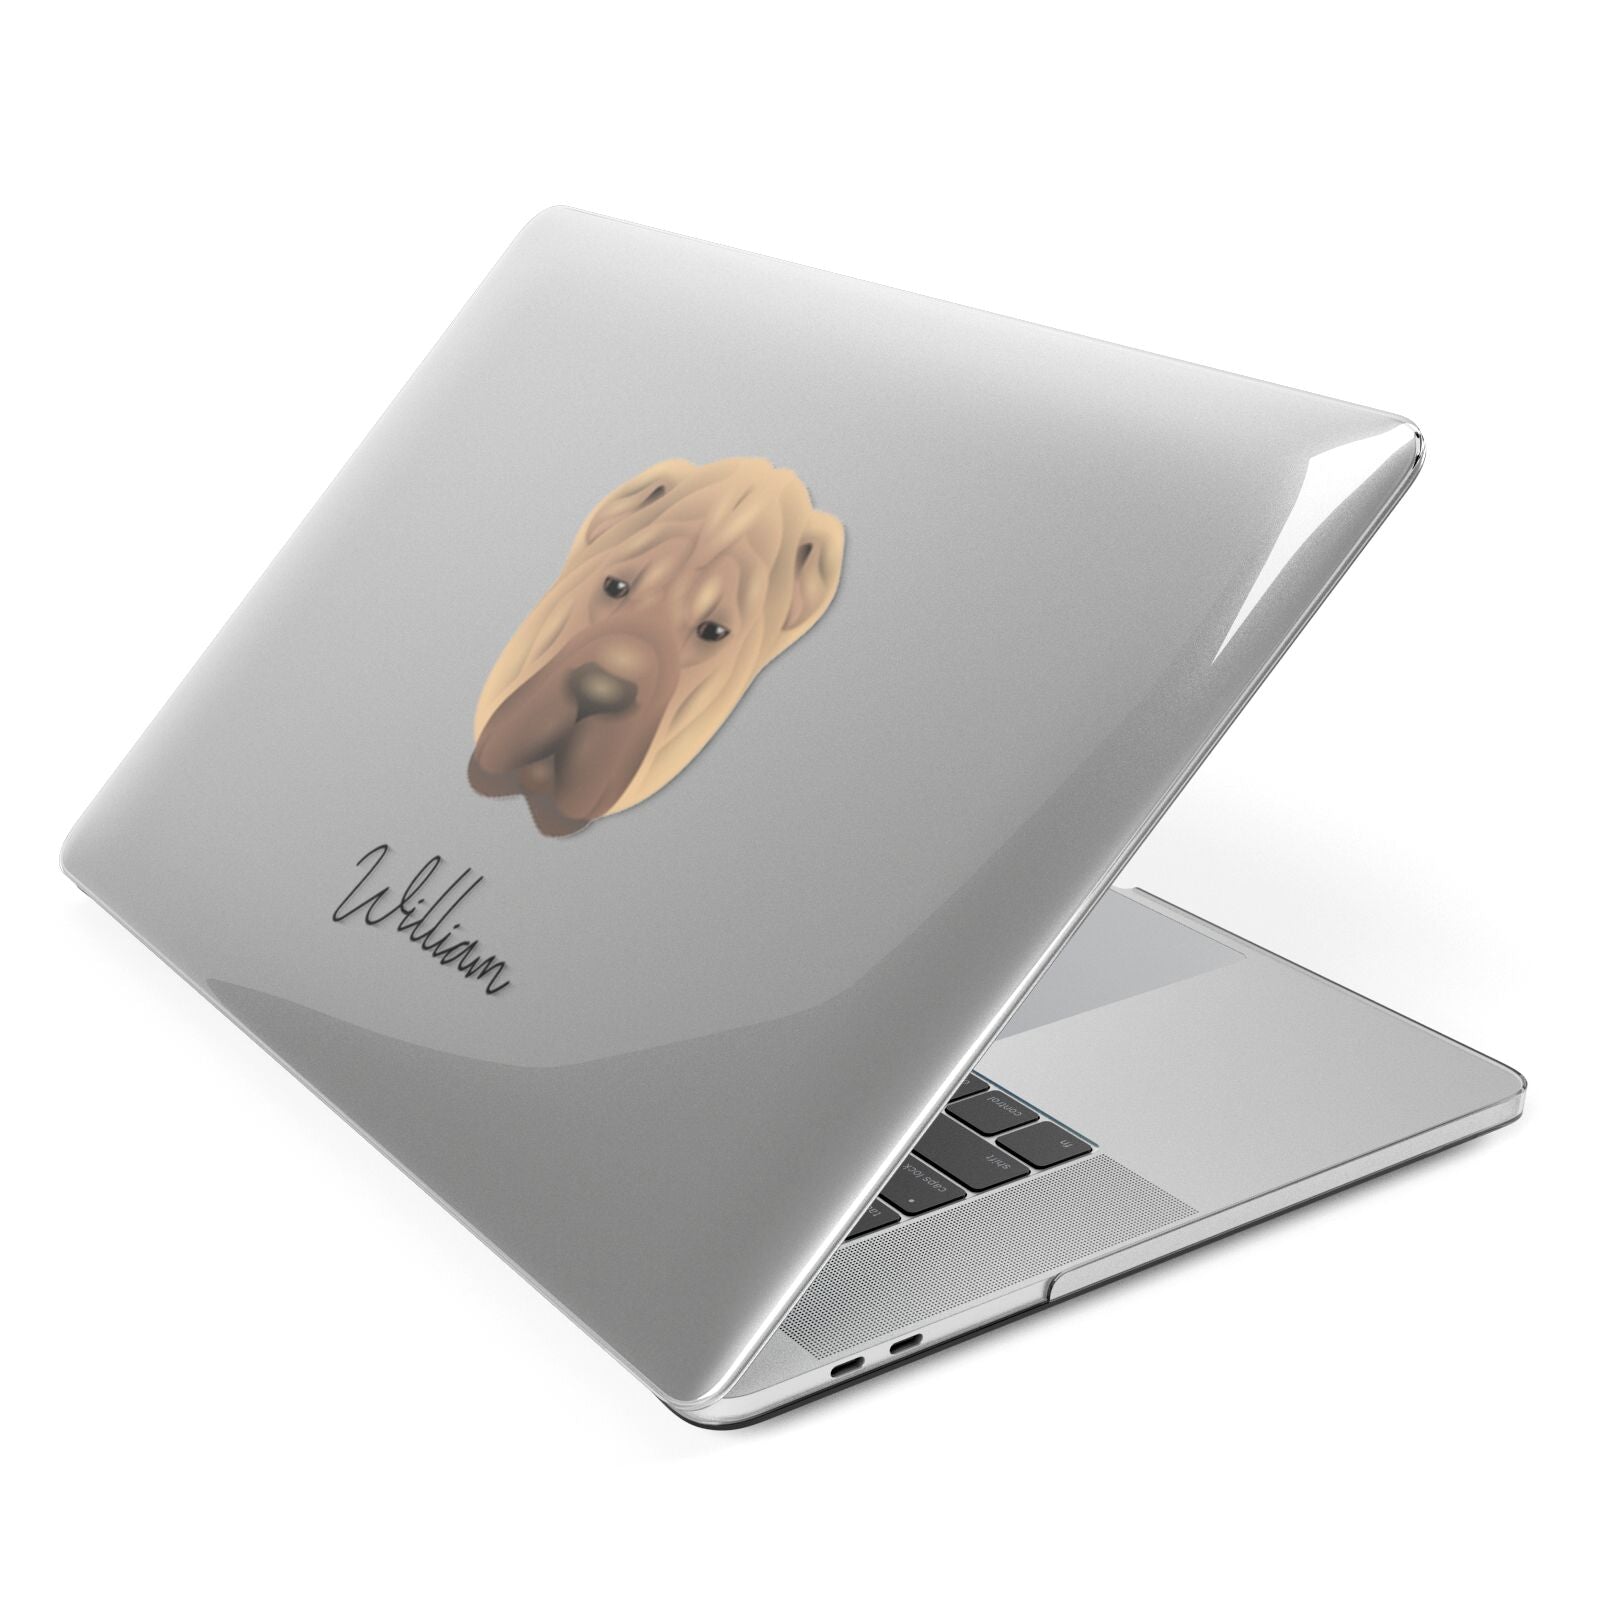 Shar Pei Personalised Apple MacBook Case Side View